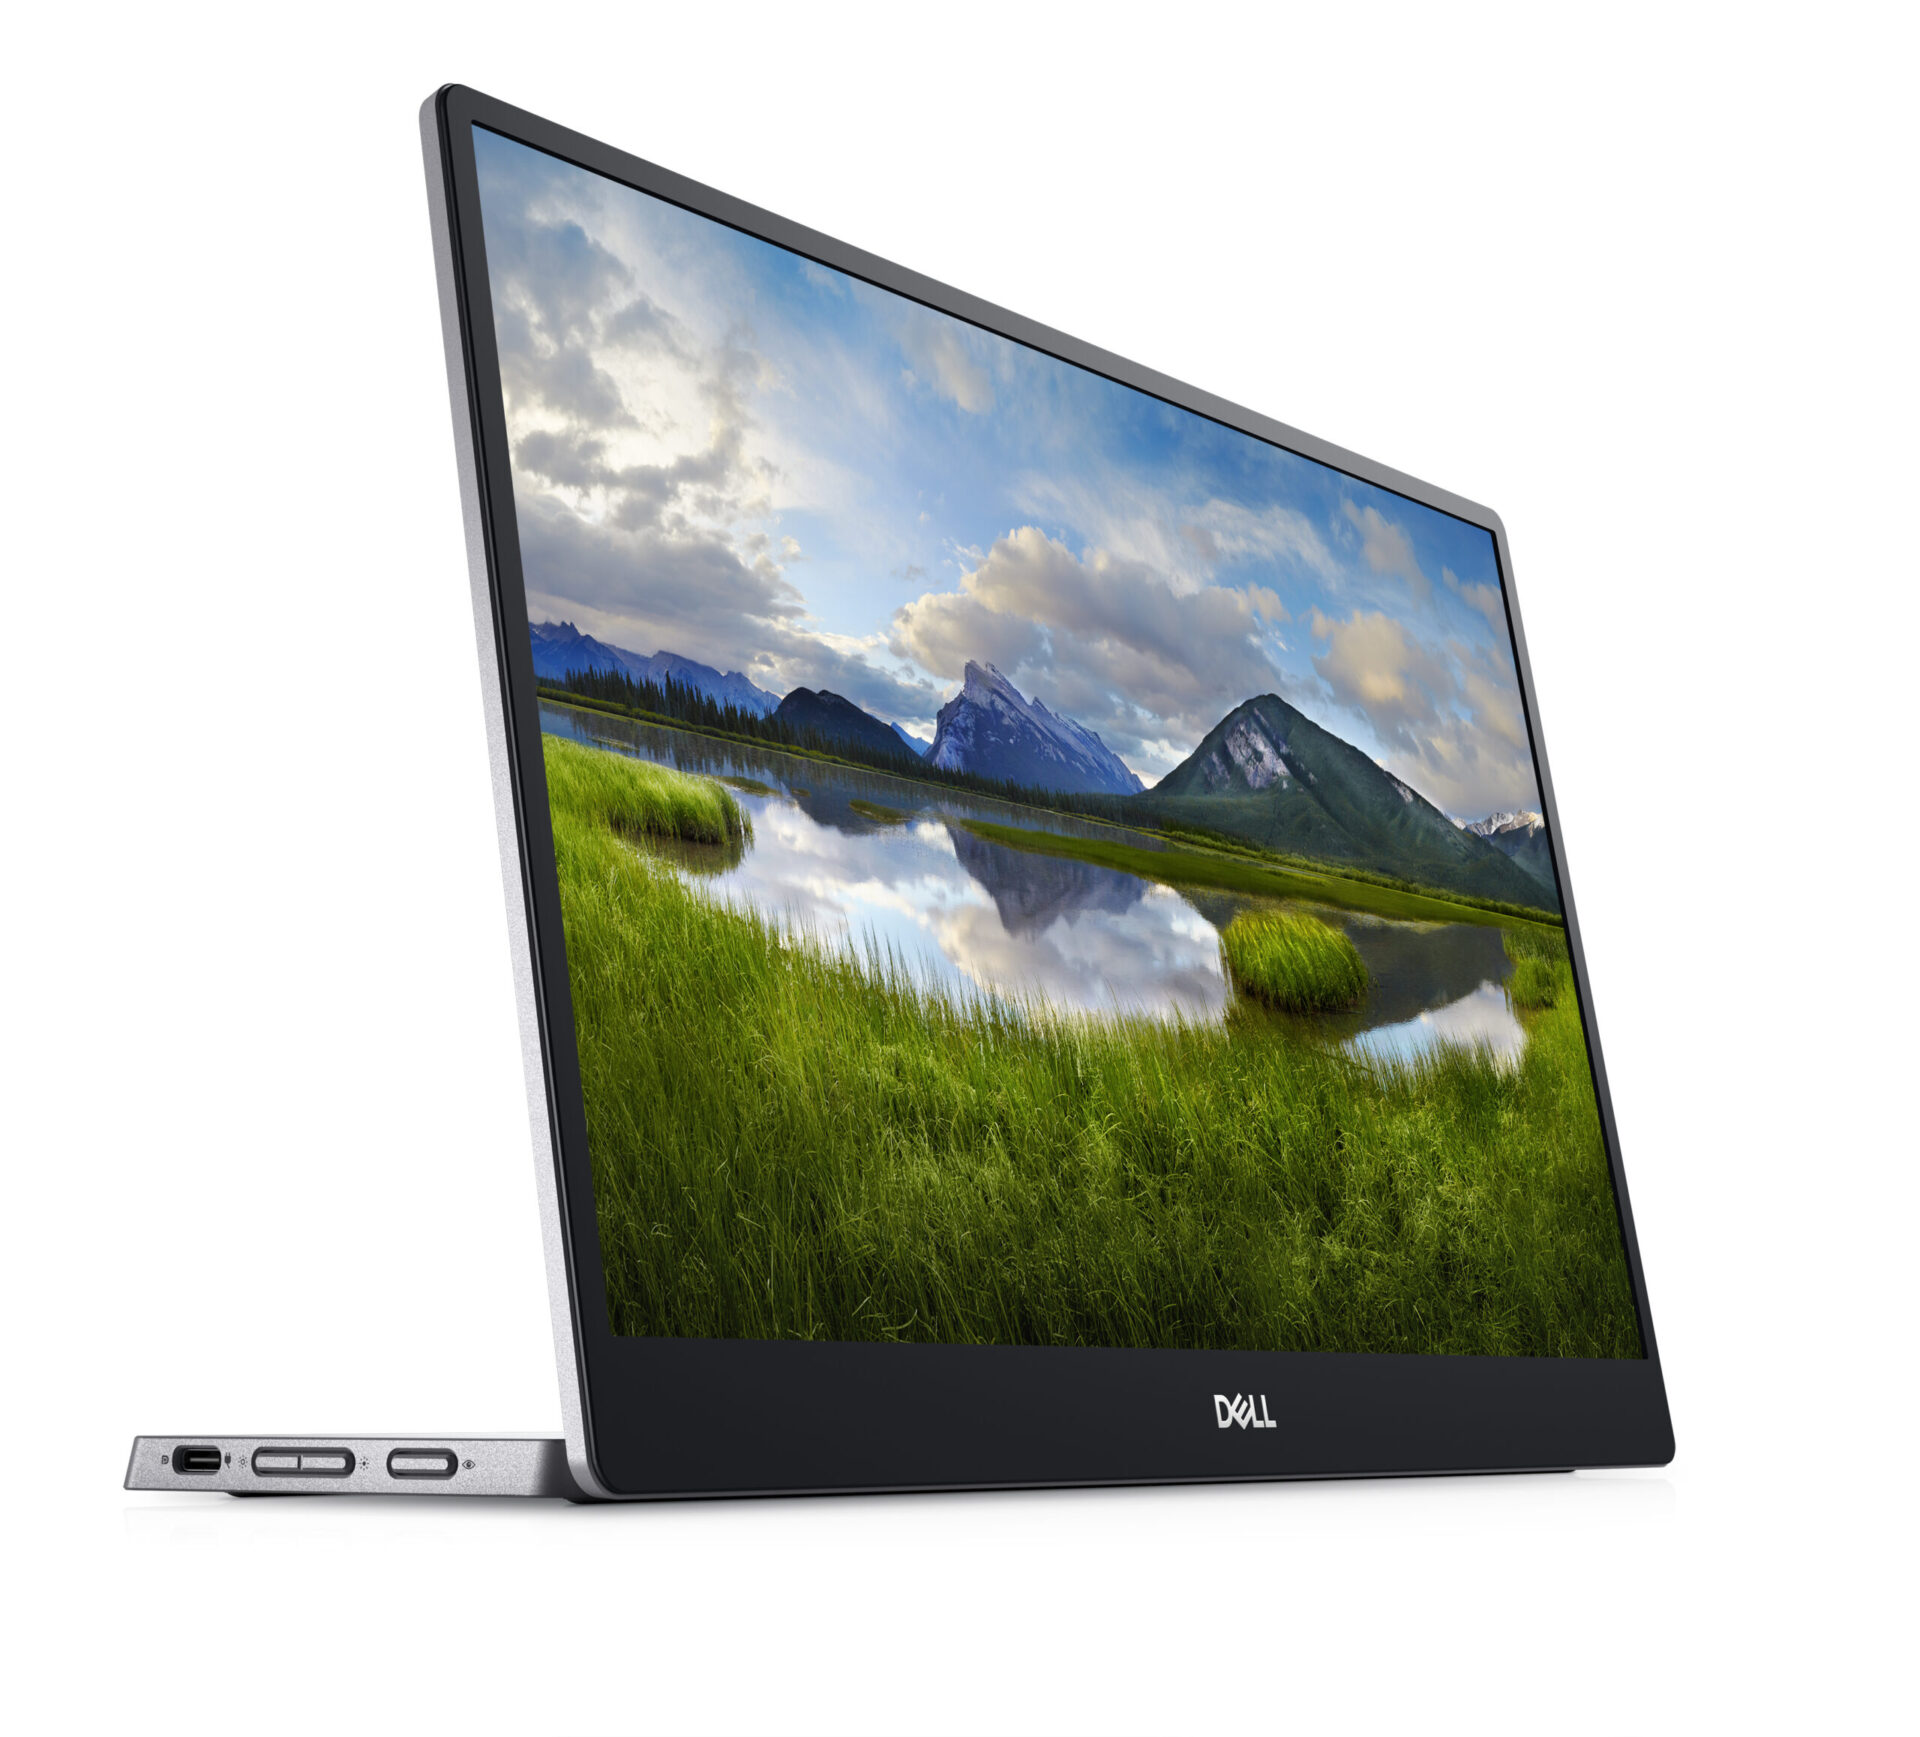 Dell anuncia primeiro monitor portátil da marca no Brasil